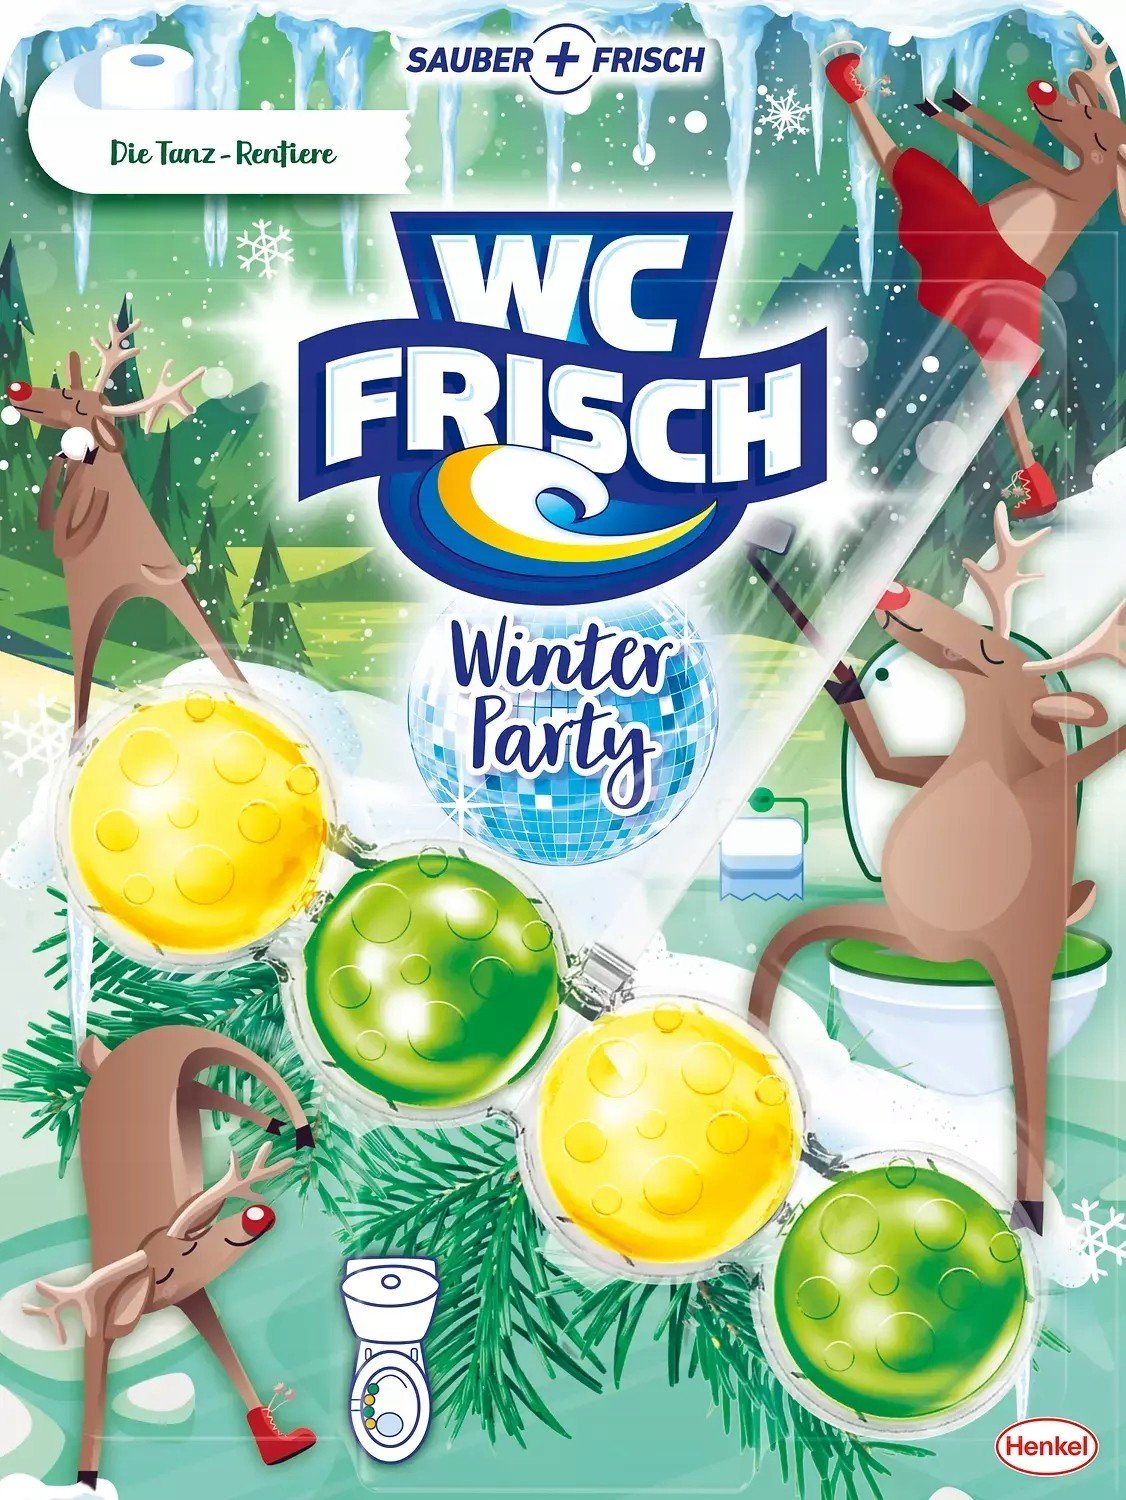 Wc Frisch Winter Tanz-Rentiere Wc závěs 50g De